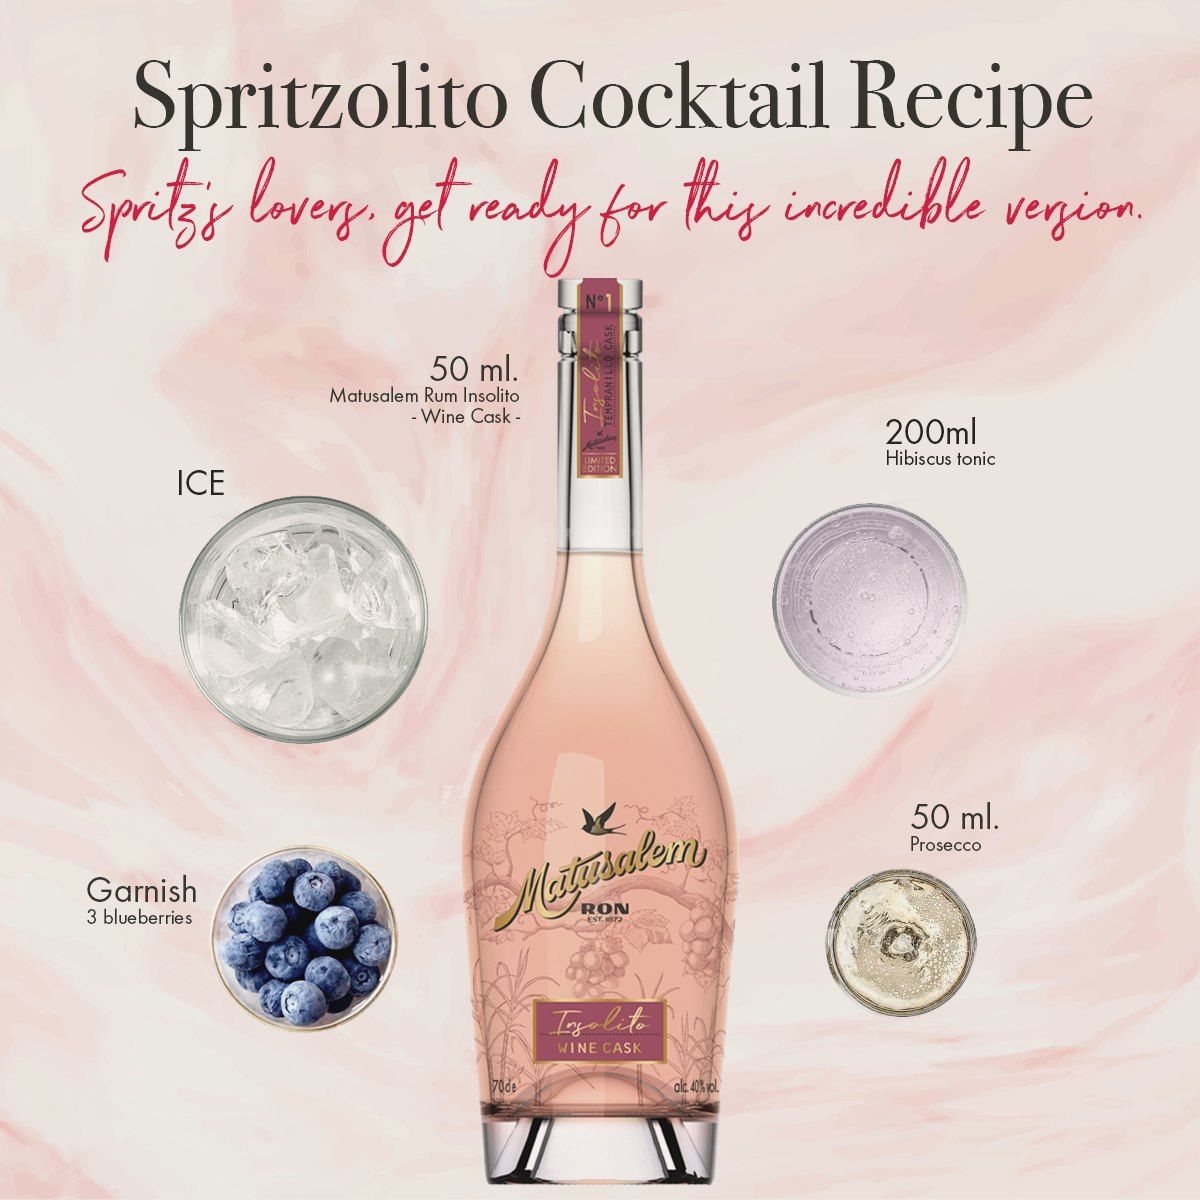 Spritzolito koktejl - hlavní ingredience: Matusalem Ron Insolito a prosecco